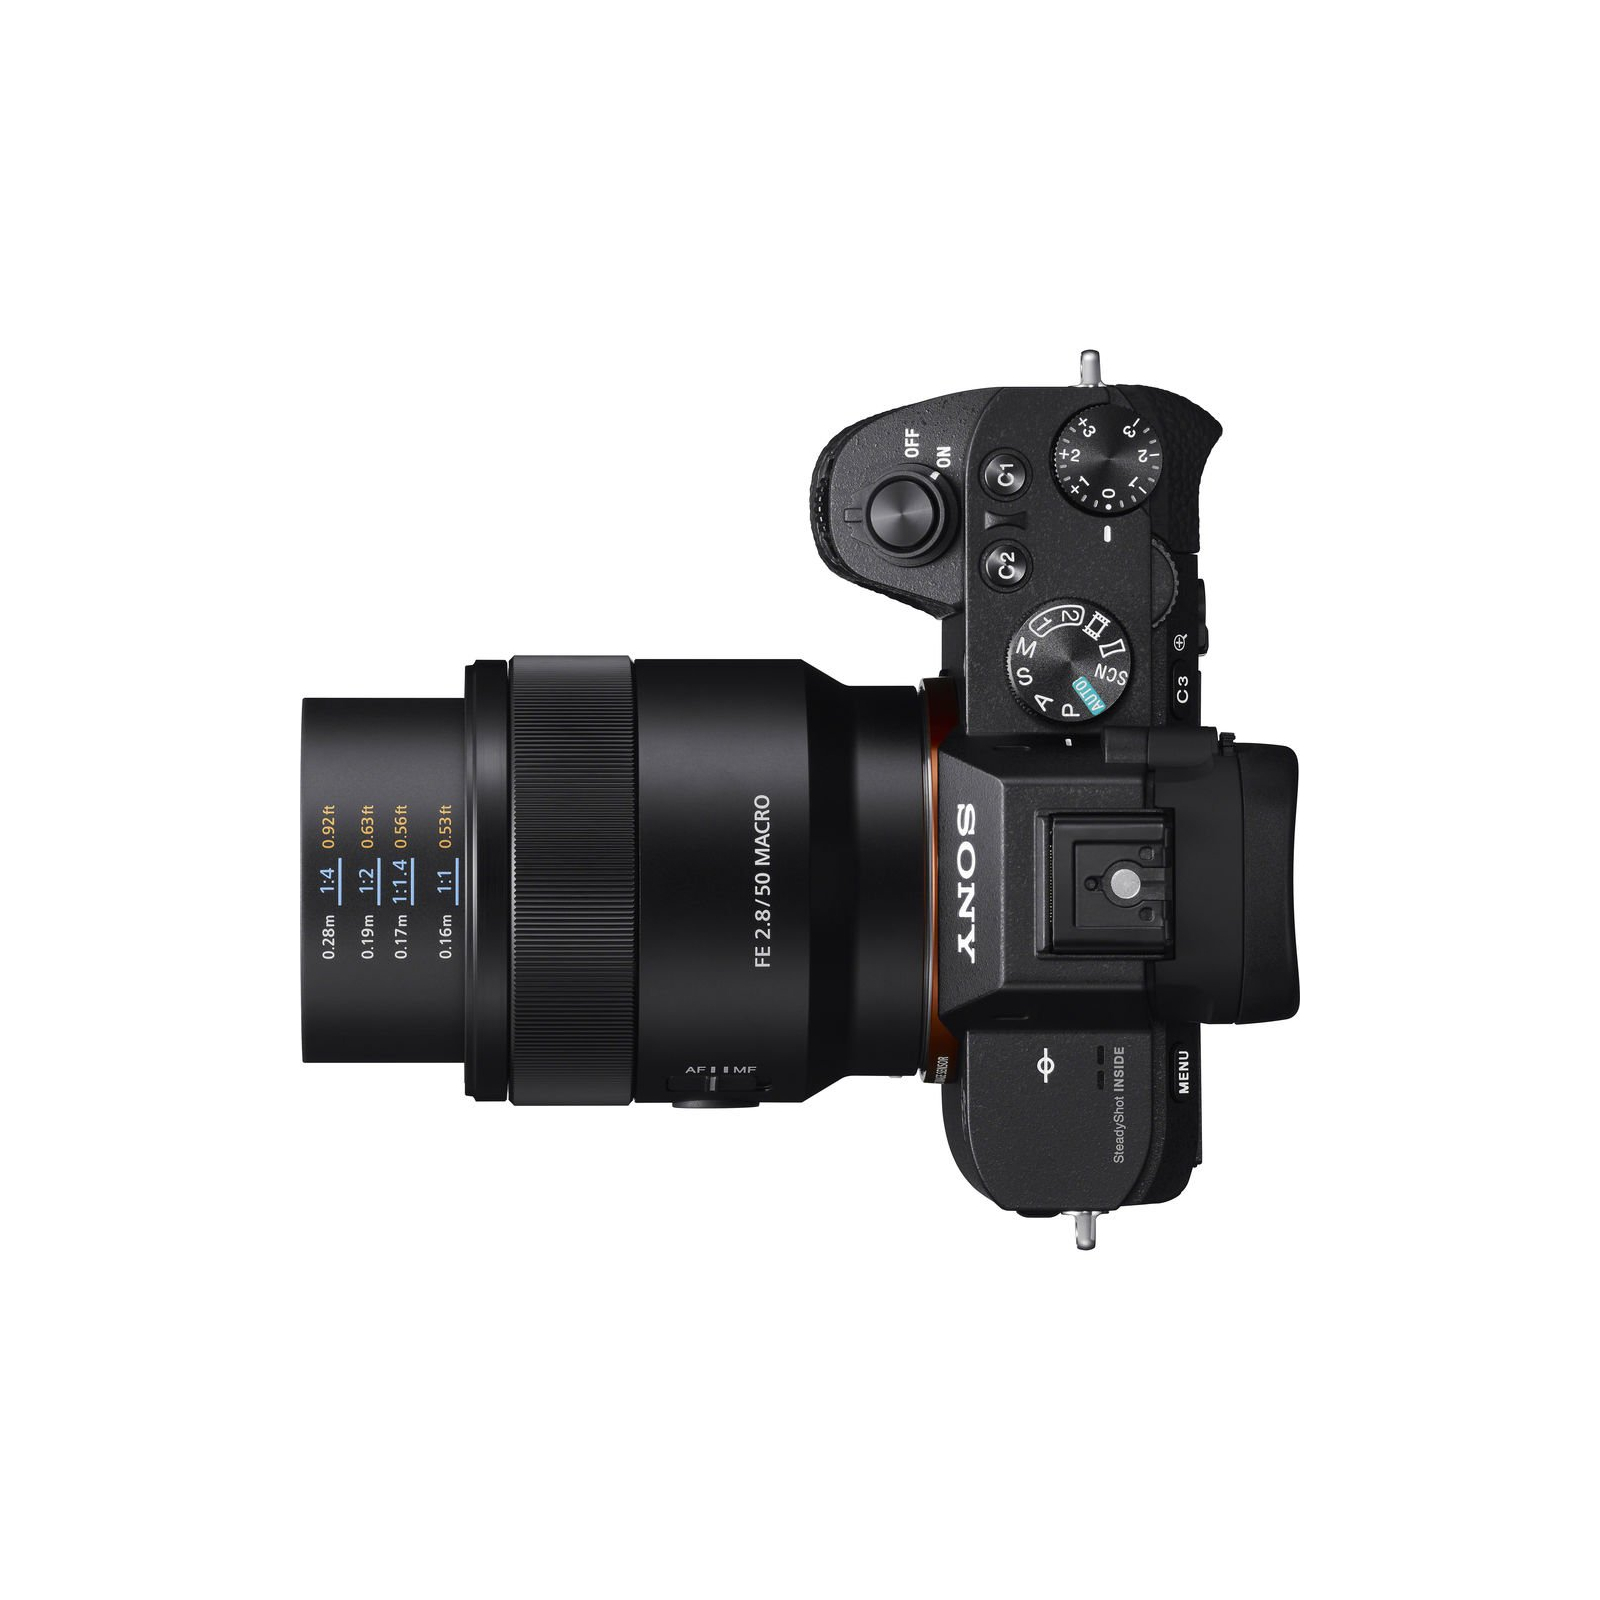 Об'єктив Sony 50mm, f/2.8 Macro для камер NEX FF (SEL50M28.SYX) зображення 9